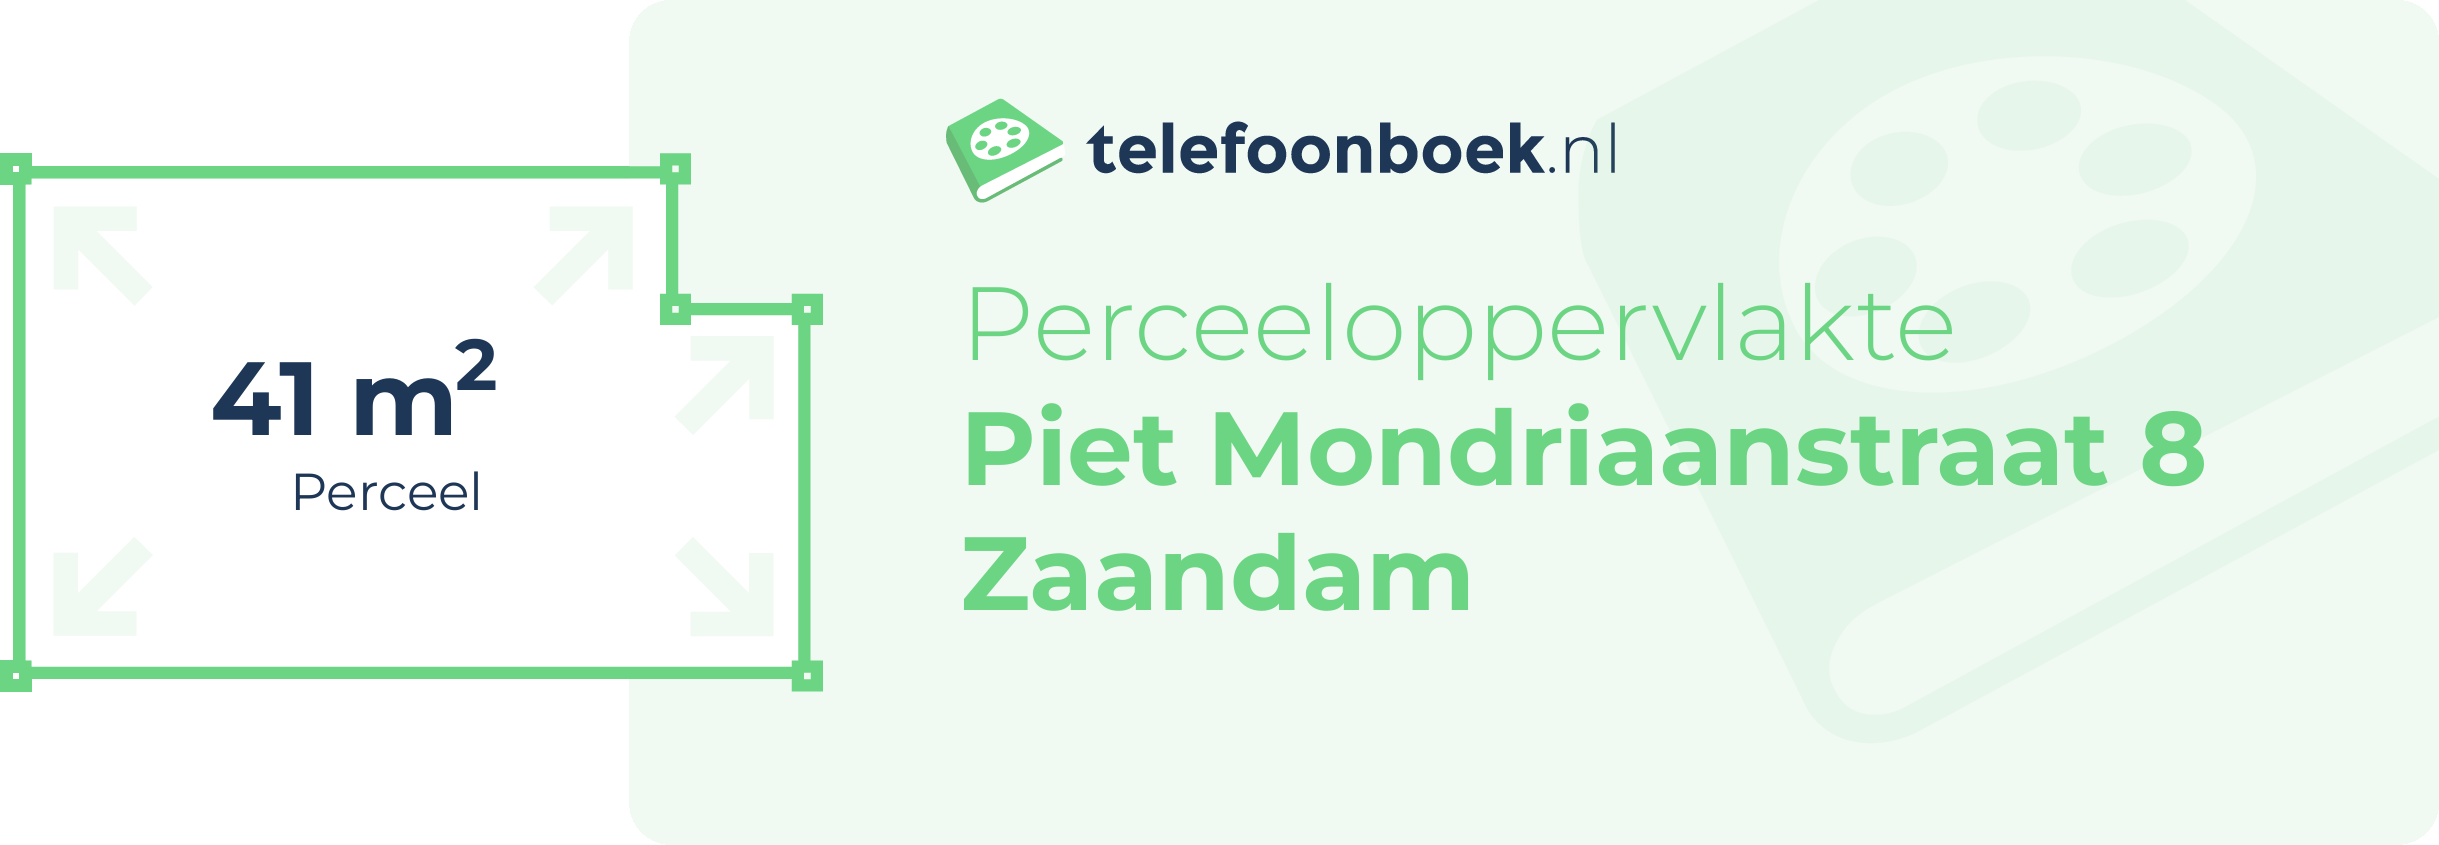 Perceeloppervlakte Piet Mondriaanstraat 8 Zaandam